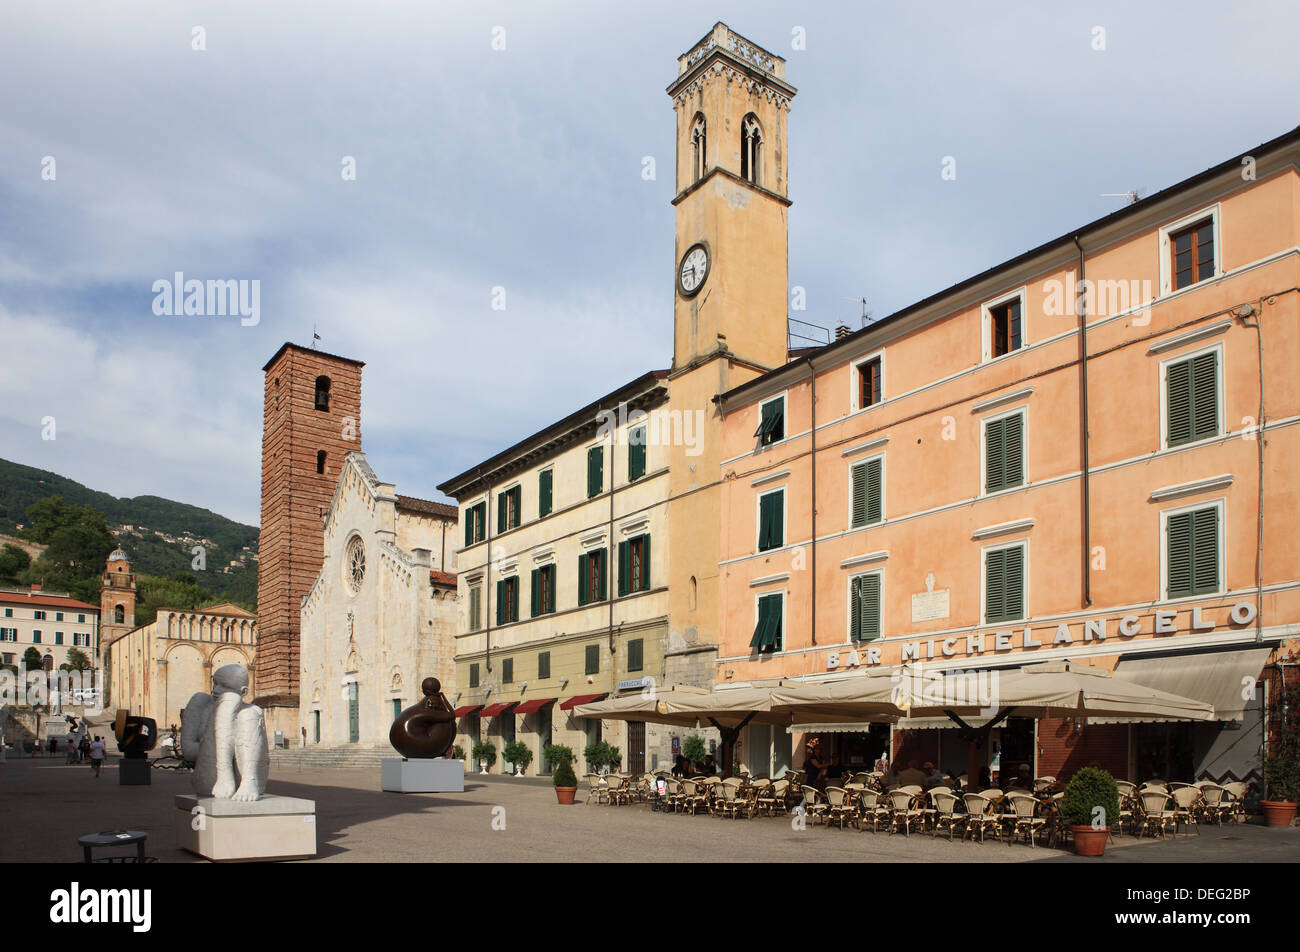 Pietrasanta italy immagini e fotografie stock ad alta risoluzione - Alamy